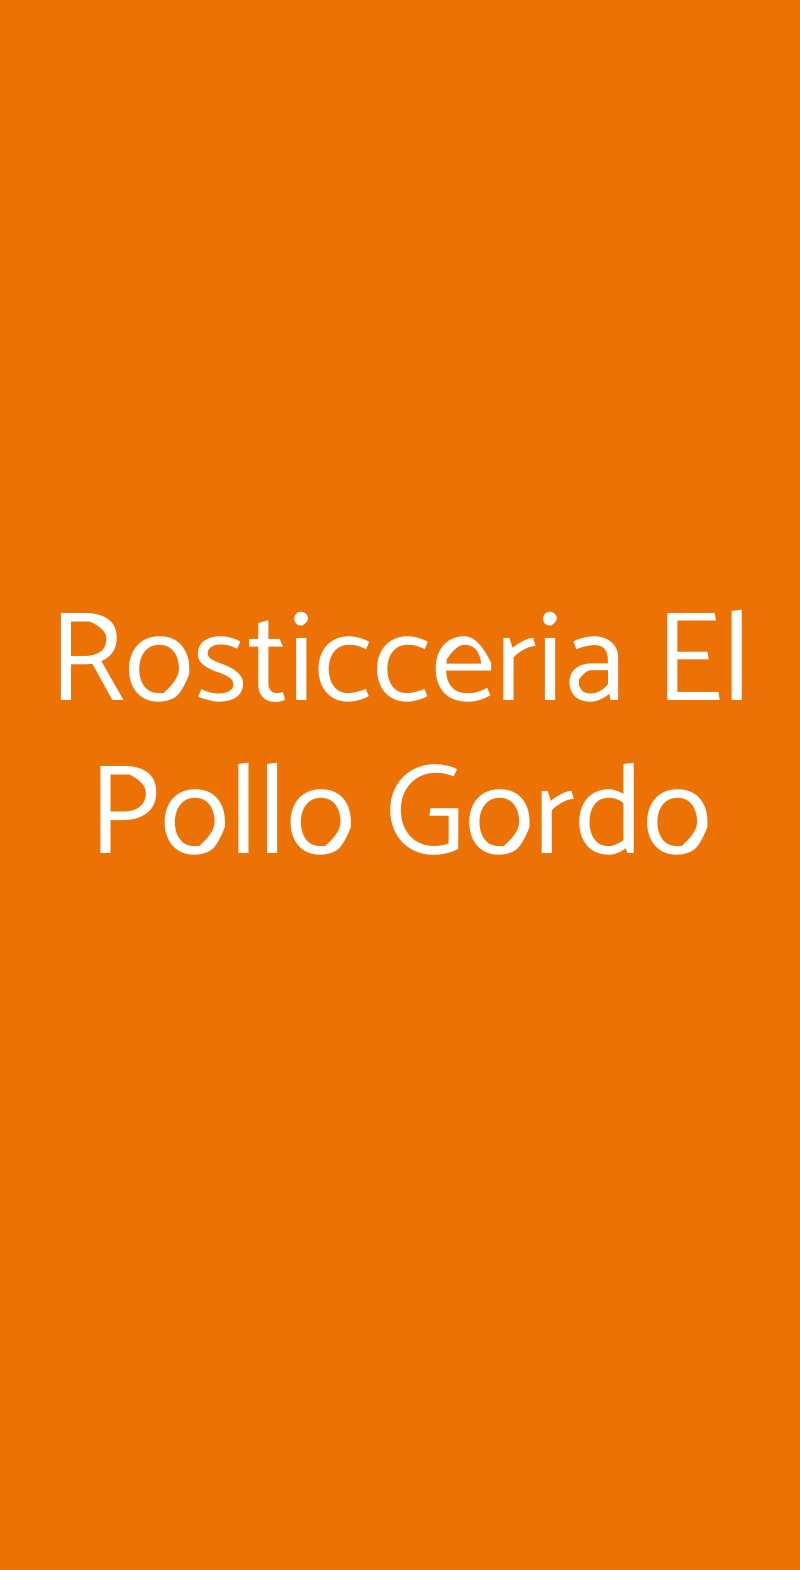 Rosticceria El Pollo Gordo Milano menù 1 pagina